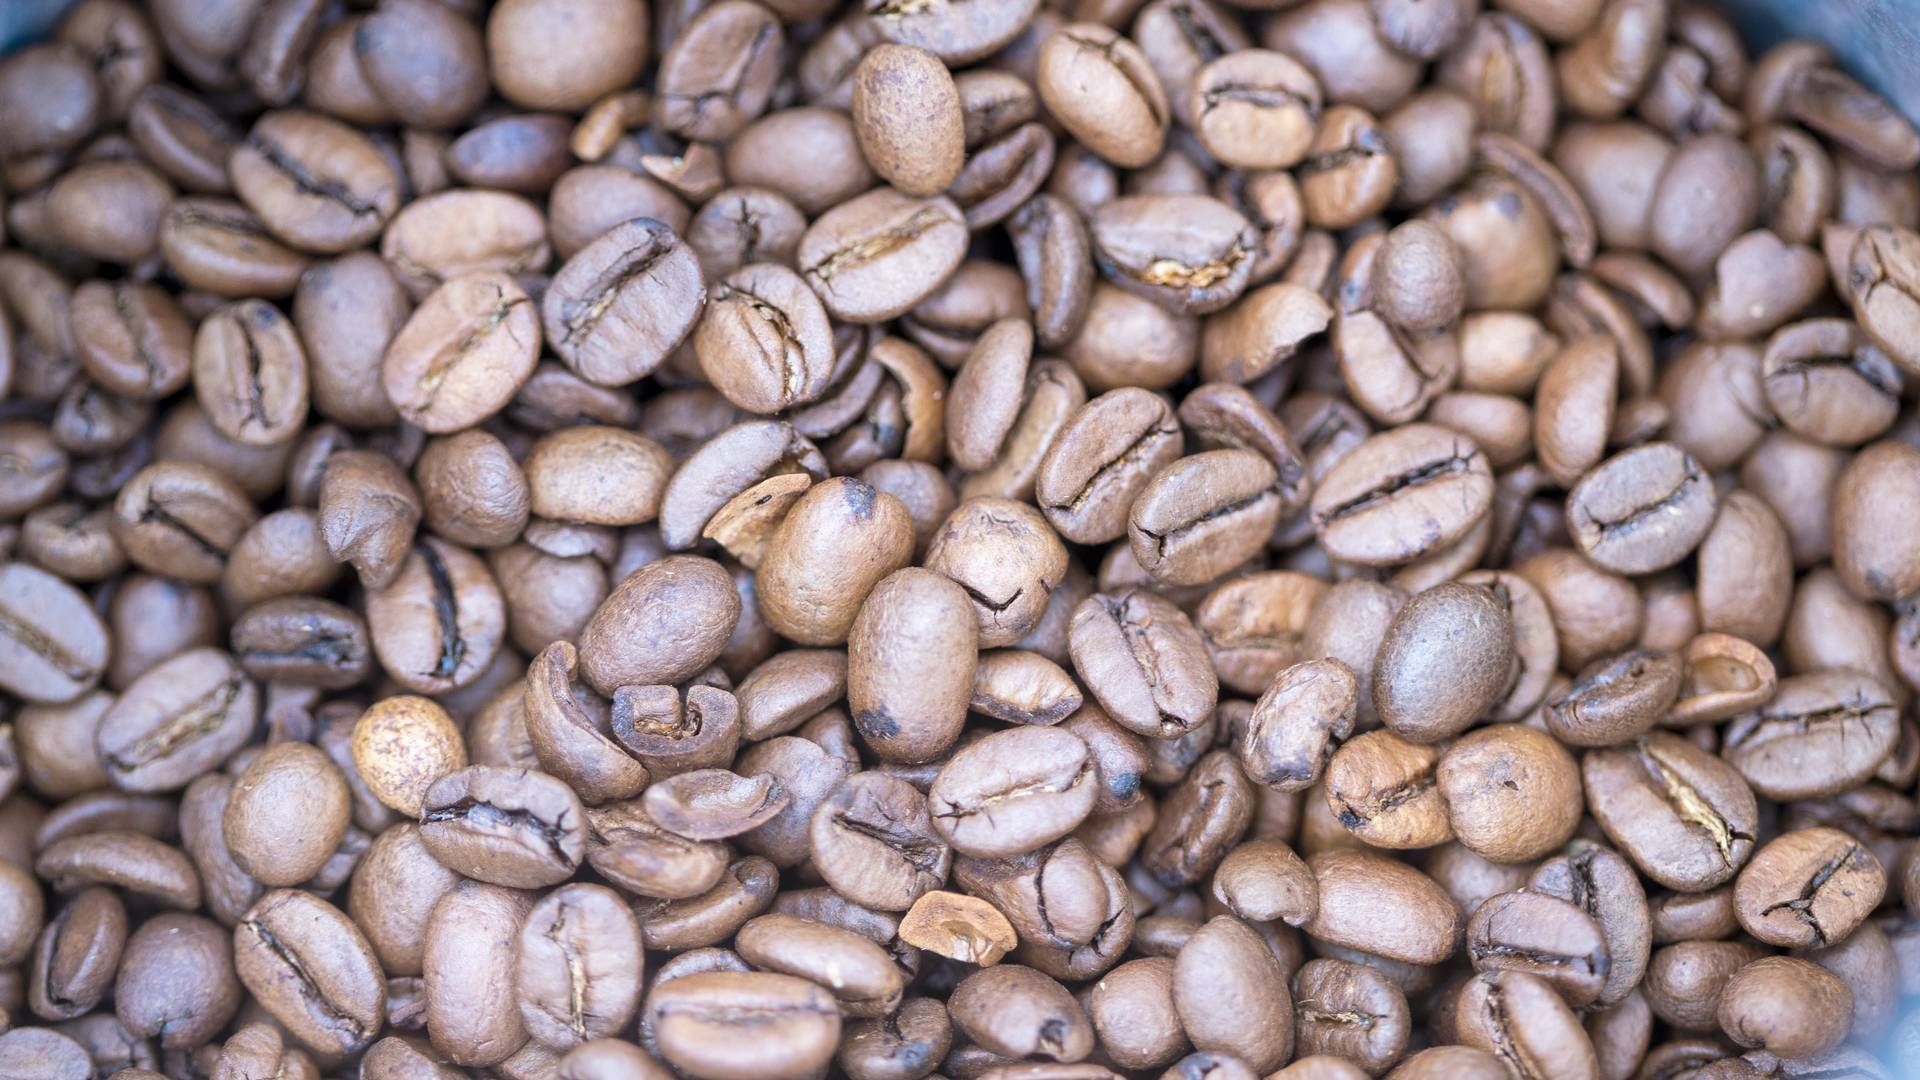 Ingen kjenner fasiten, likevel er det tegn på at råvareprisen for kaffe skal ned, mener kaffeimportører. | Foto: Terje Pedersen / NTB